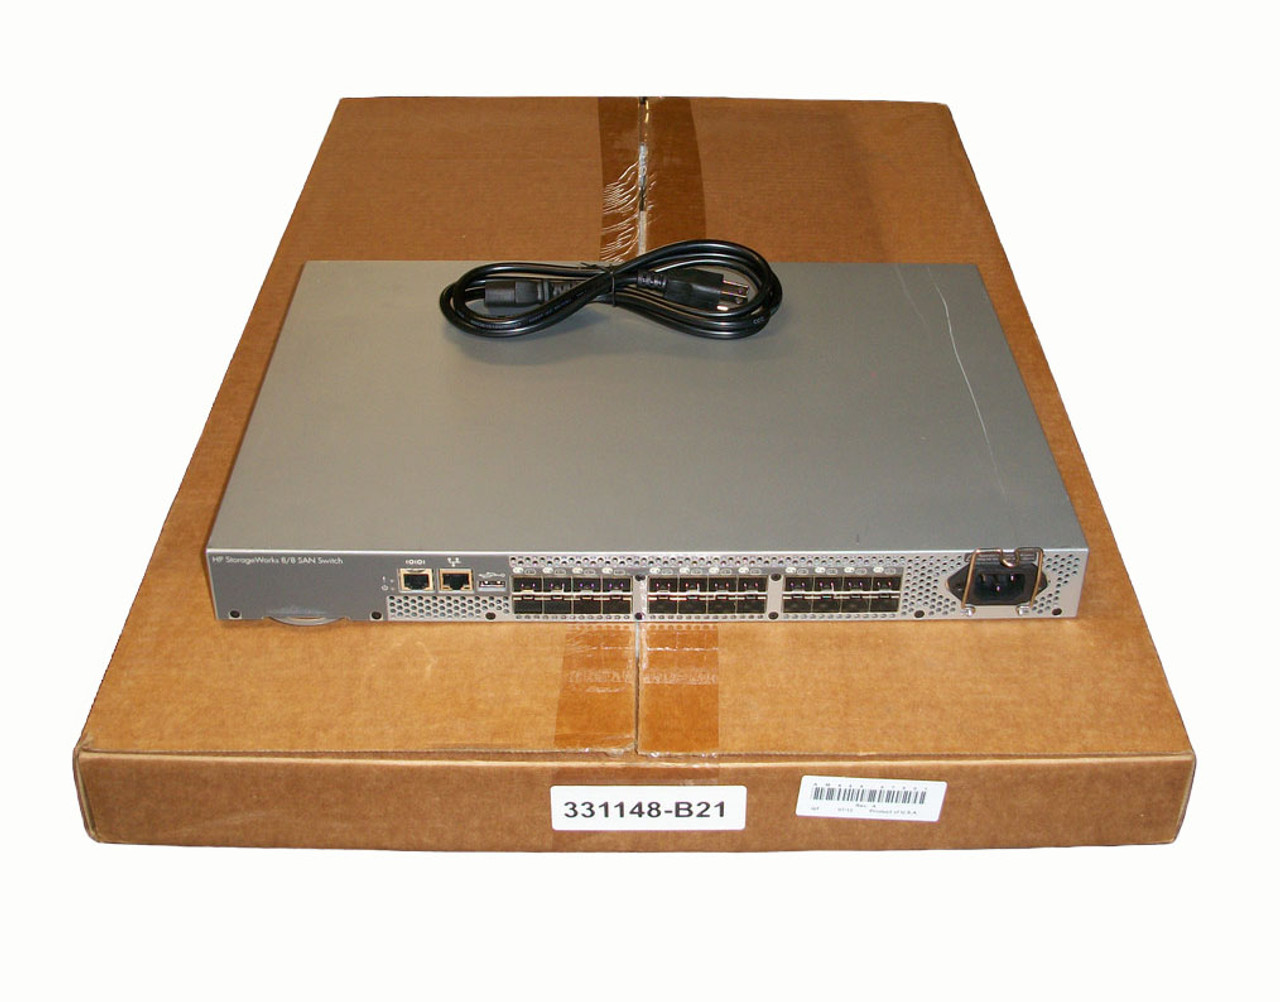 HP AM866B Storageworks 8/8 E-Port San Switch